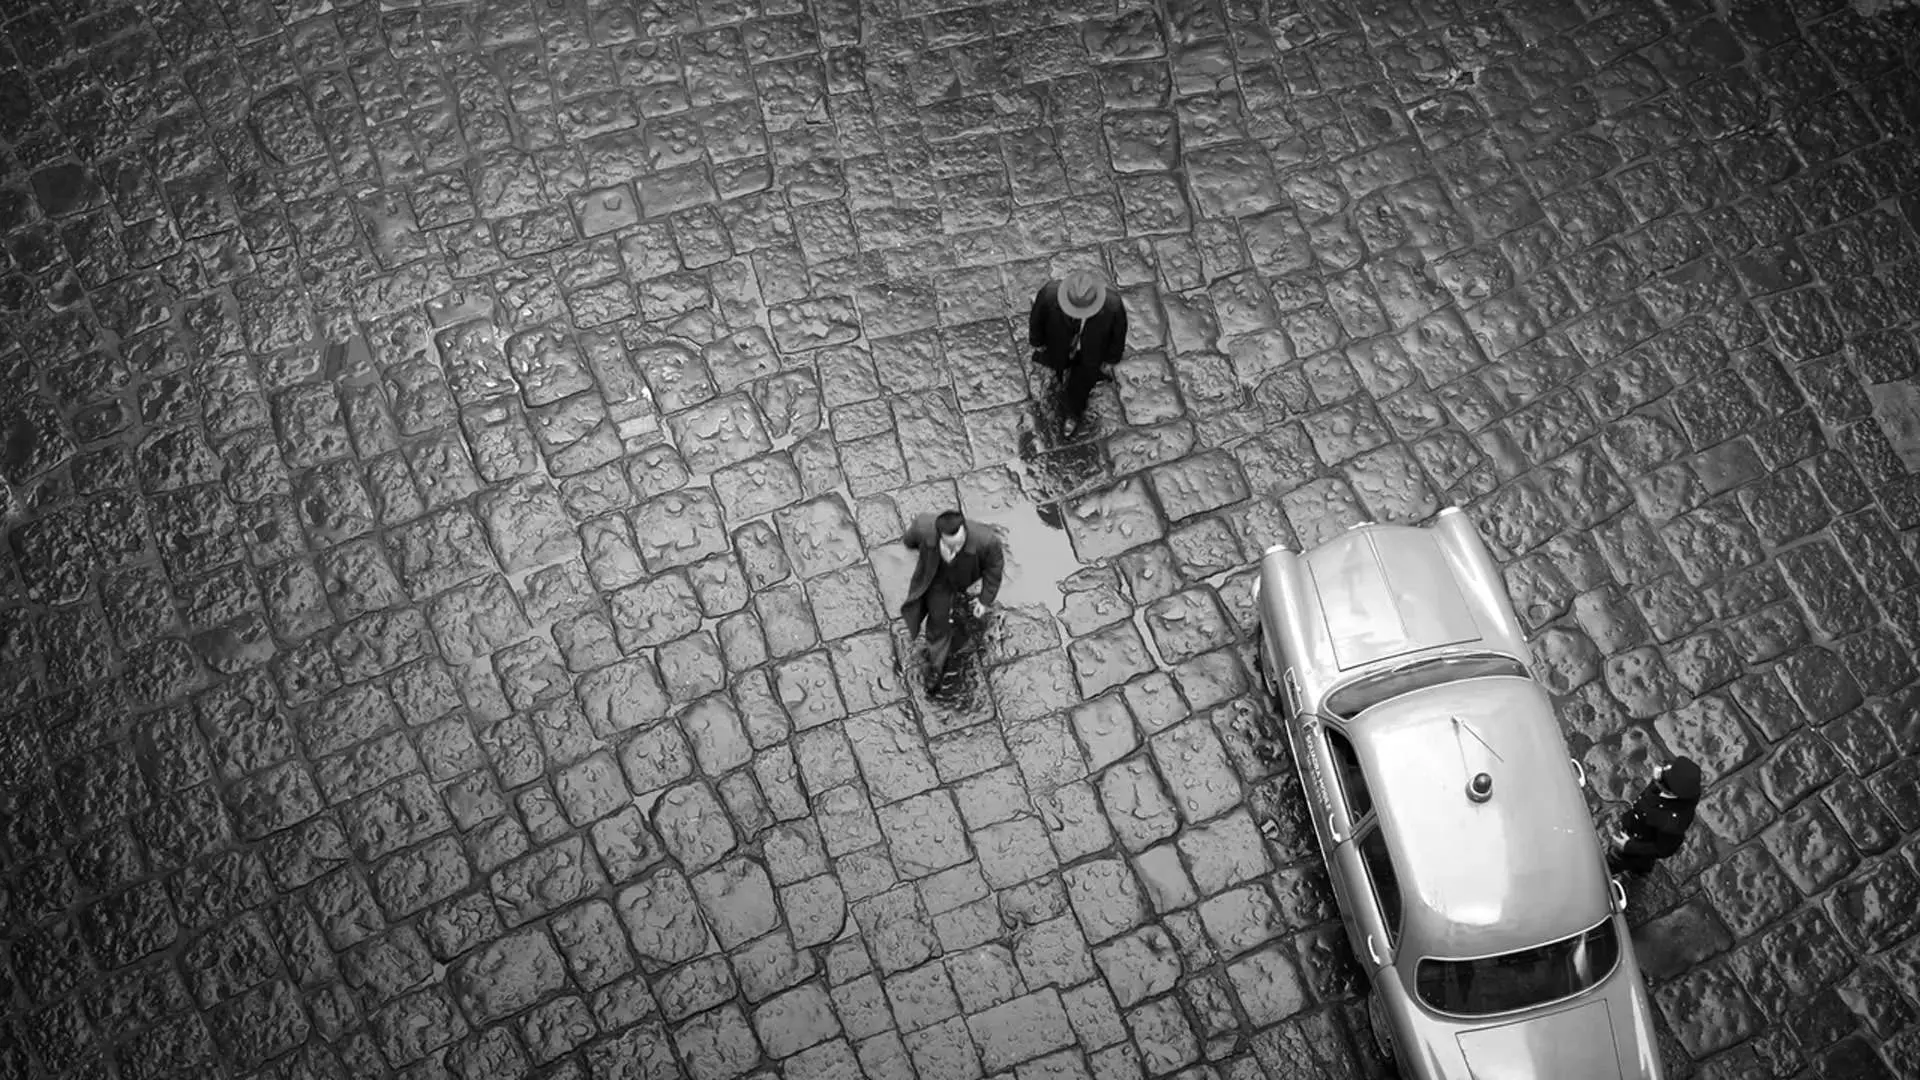 نمای سیاه و سفید بالای سر دو مرد در حال راه رفتن در کنار ماشین در سریال ریپلی به کارگردانی استیون زیلیان.